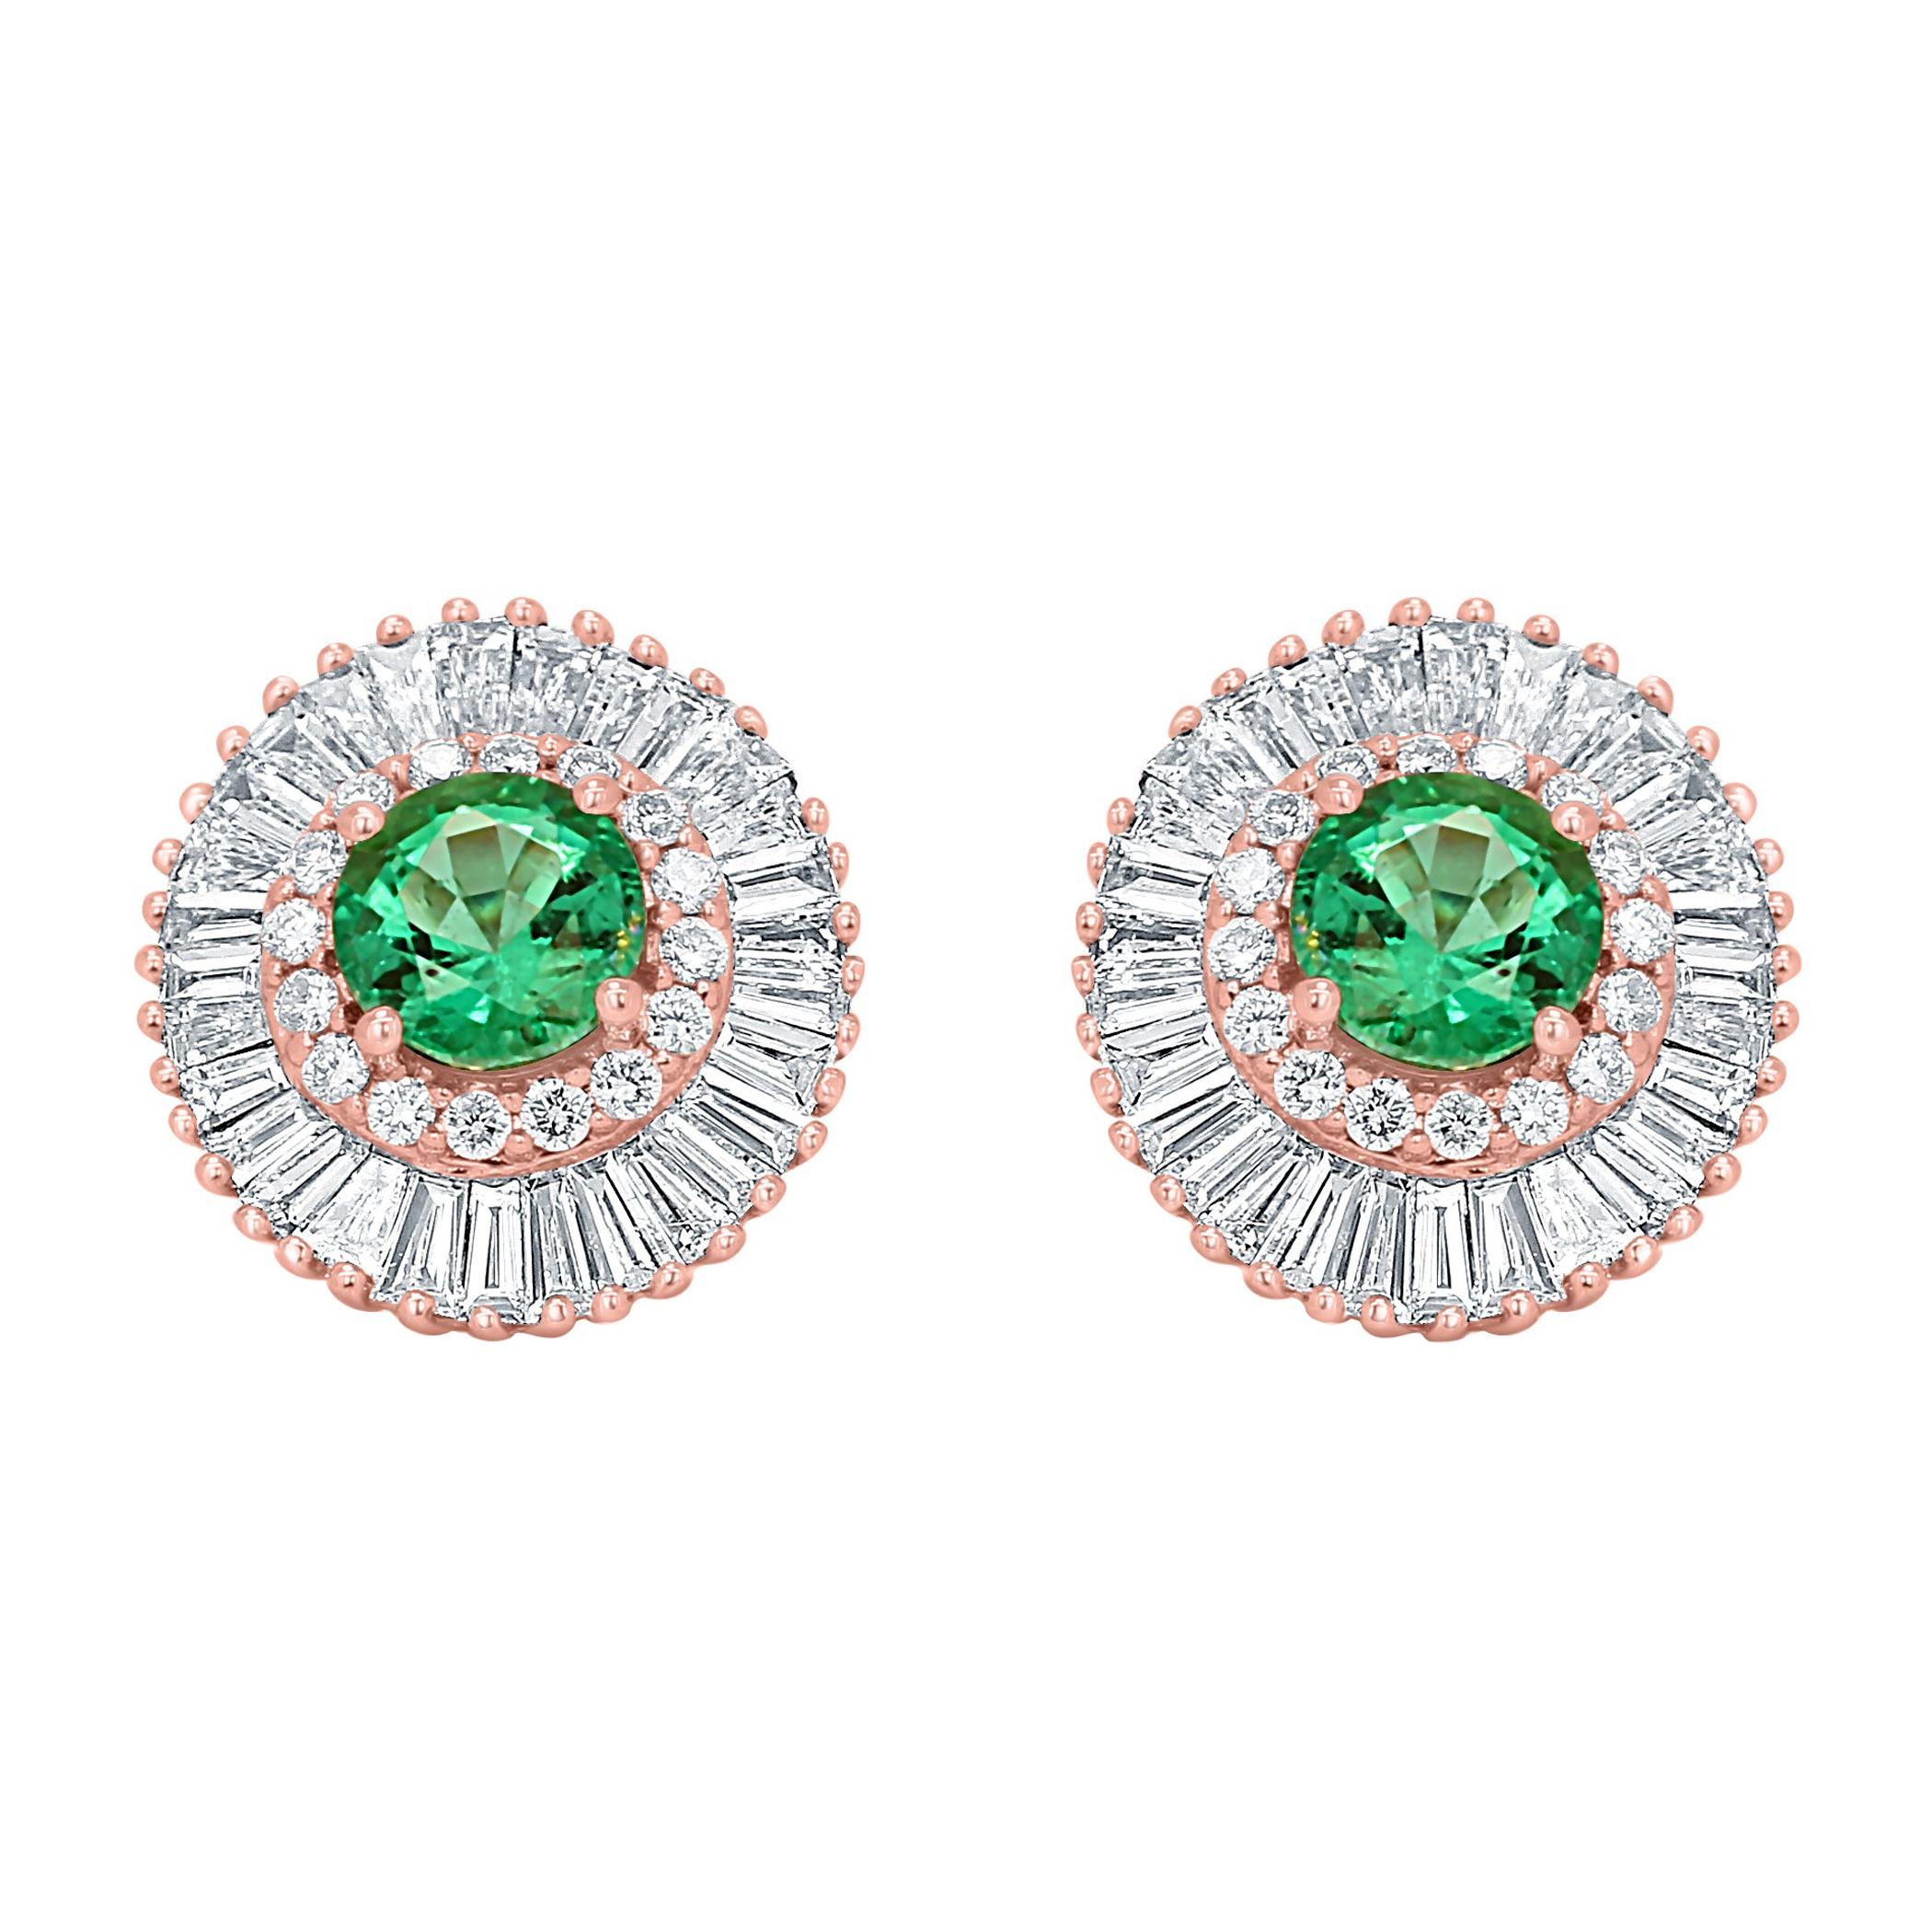 Emerald Round Diamond Double Halo Gold Ballerina Art Deco Style Stud Earring